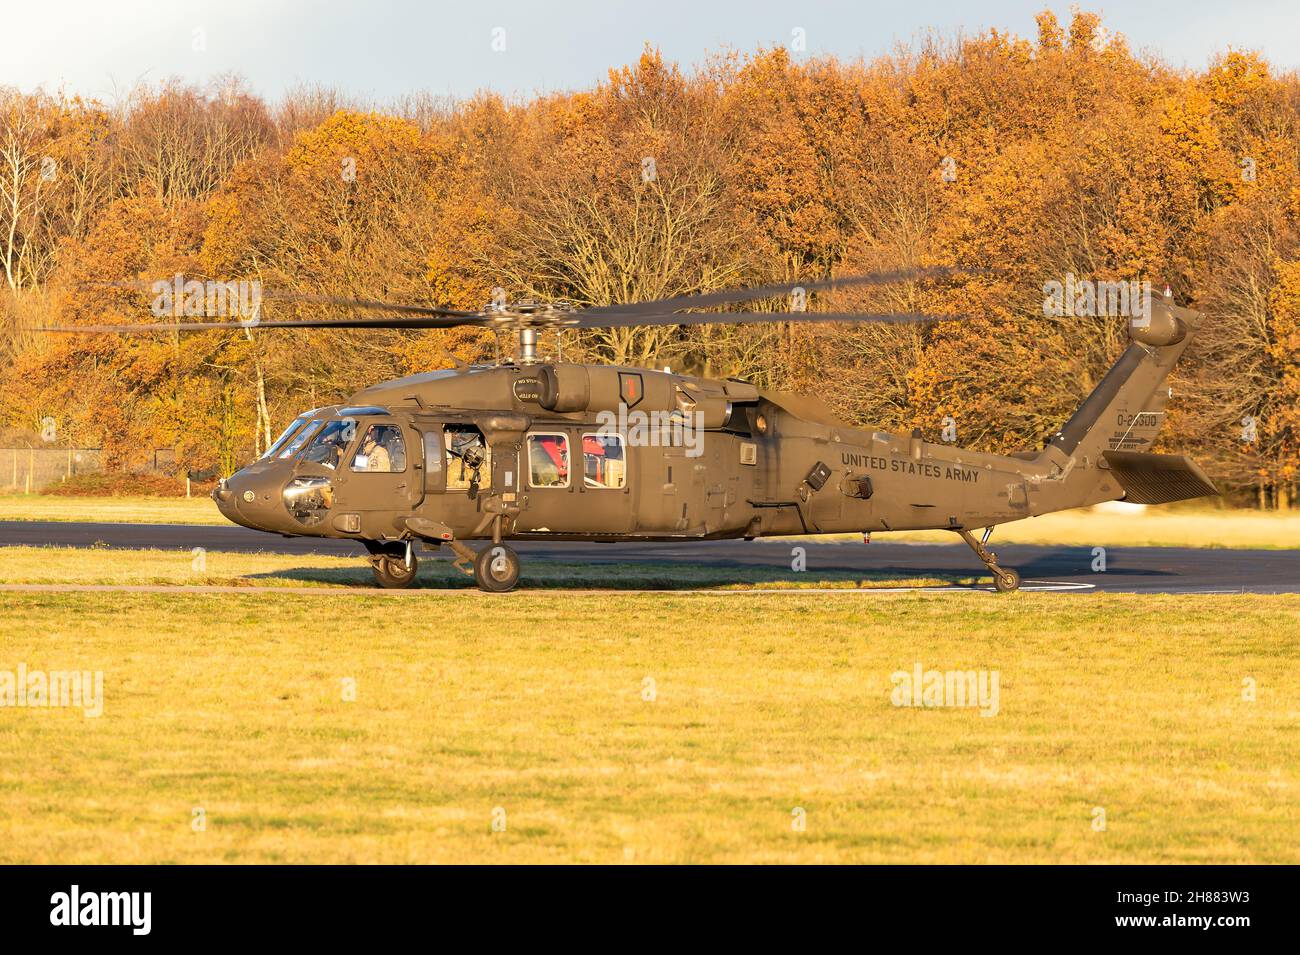 Un elicottero Sikorsky UH-60 Black Hawk a due motori dell'esercito degli Stati Uniti presso la base aerea Gilze-Rijen, Paesi Bassi. Foto Stock